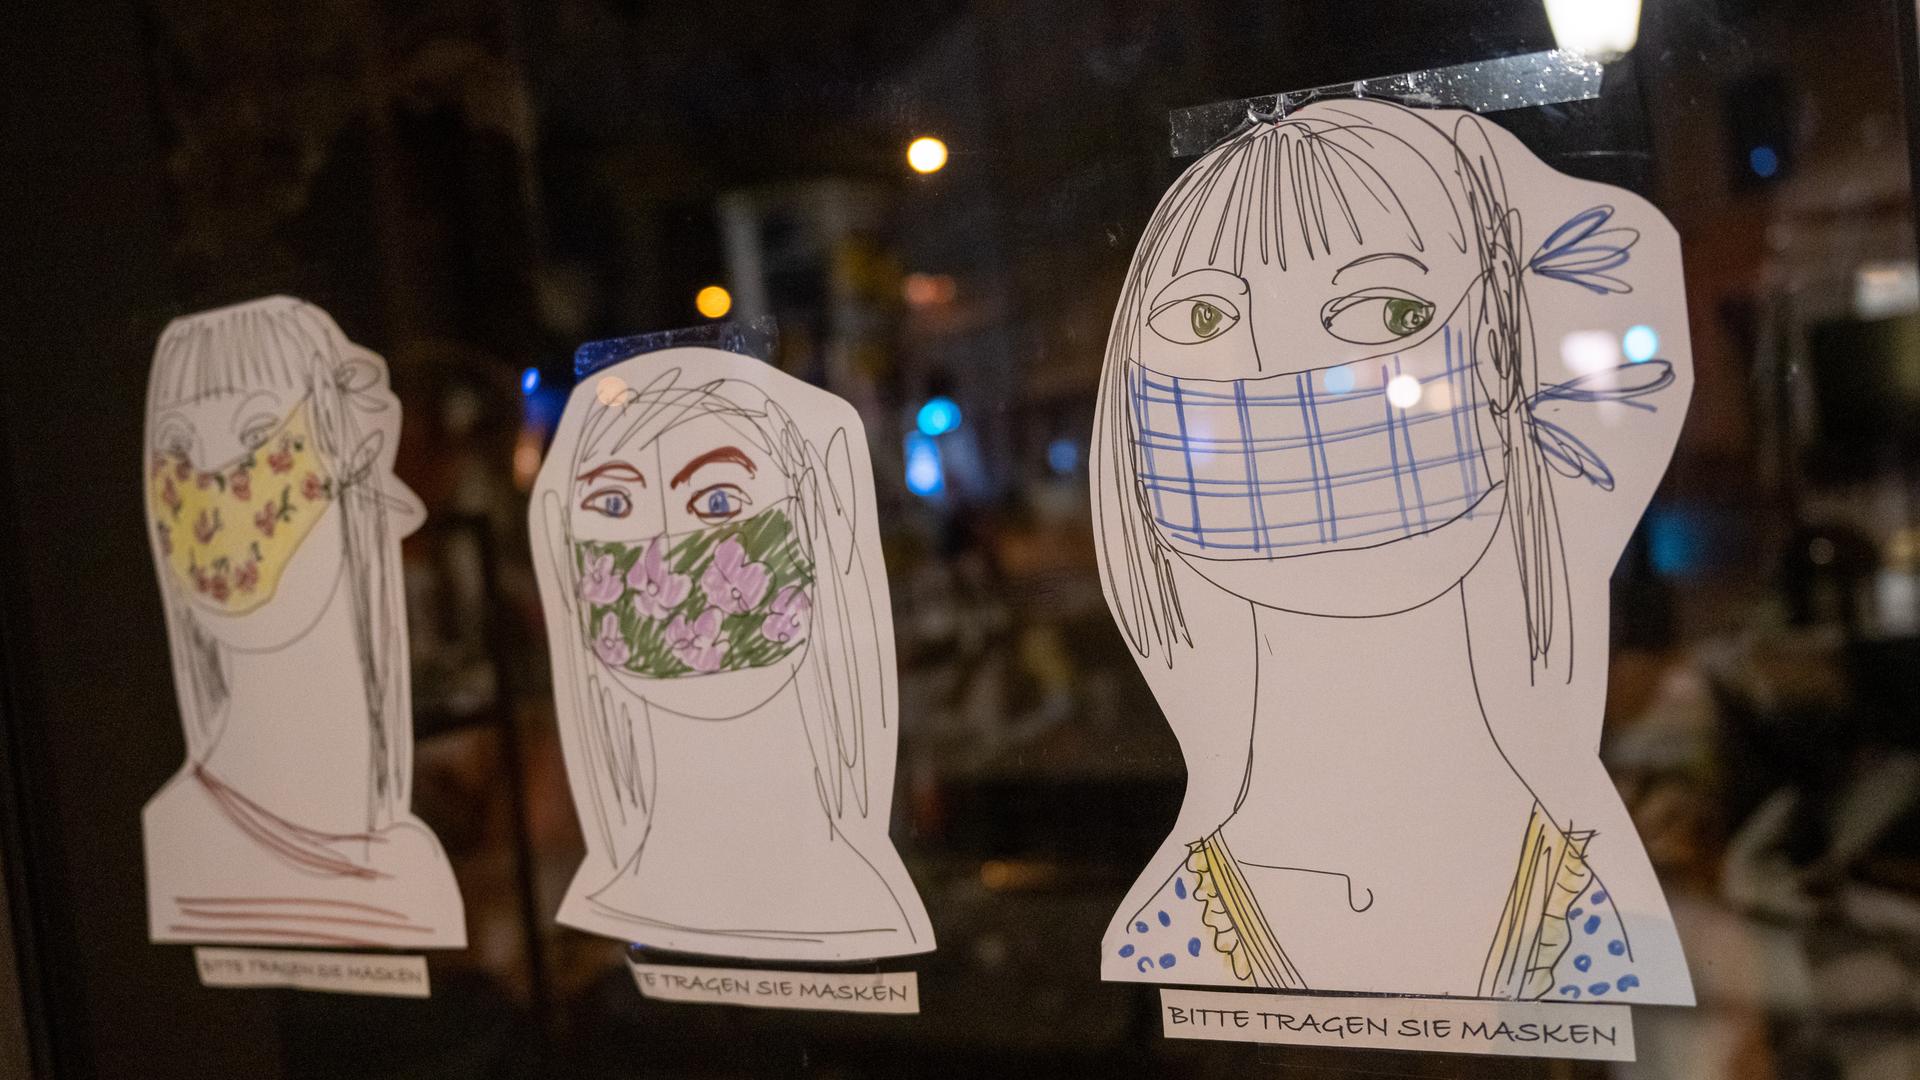 Am Schaufenster eines Geschäfts kleben drei auf Papier gezeichnete und ausgeschnittene Köpfe, darunter jeweils der handschriftliche Hinweis: "Bitte tragen Sie Masken".